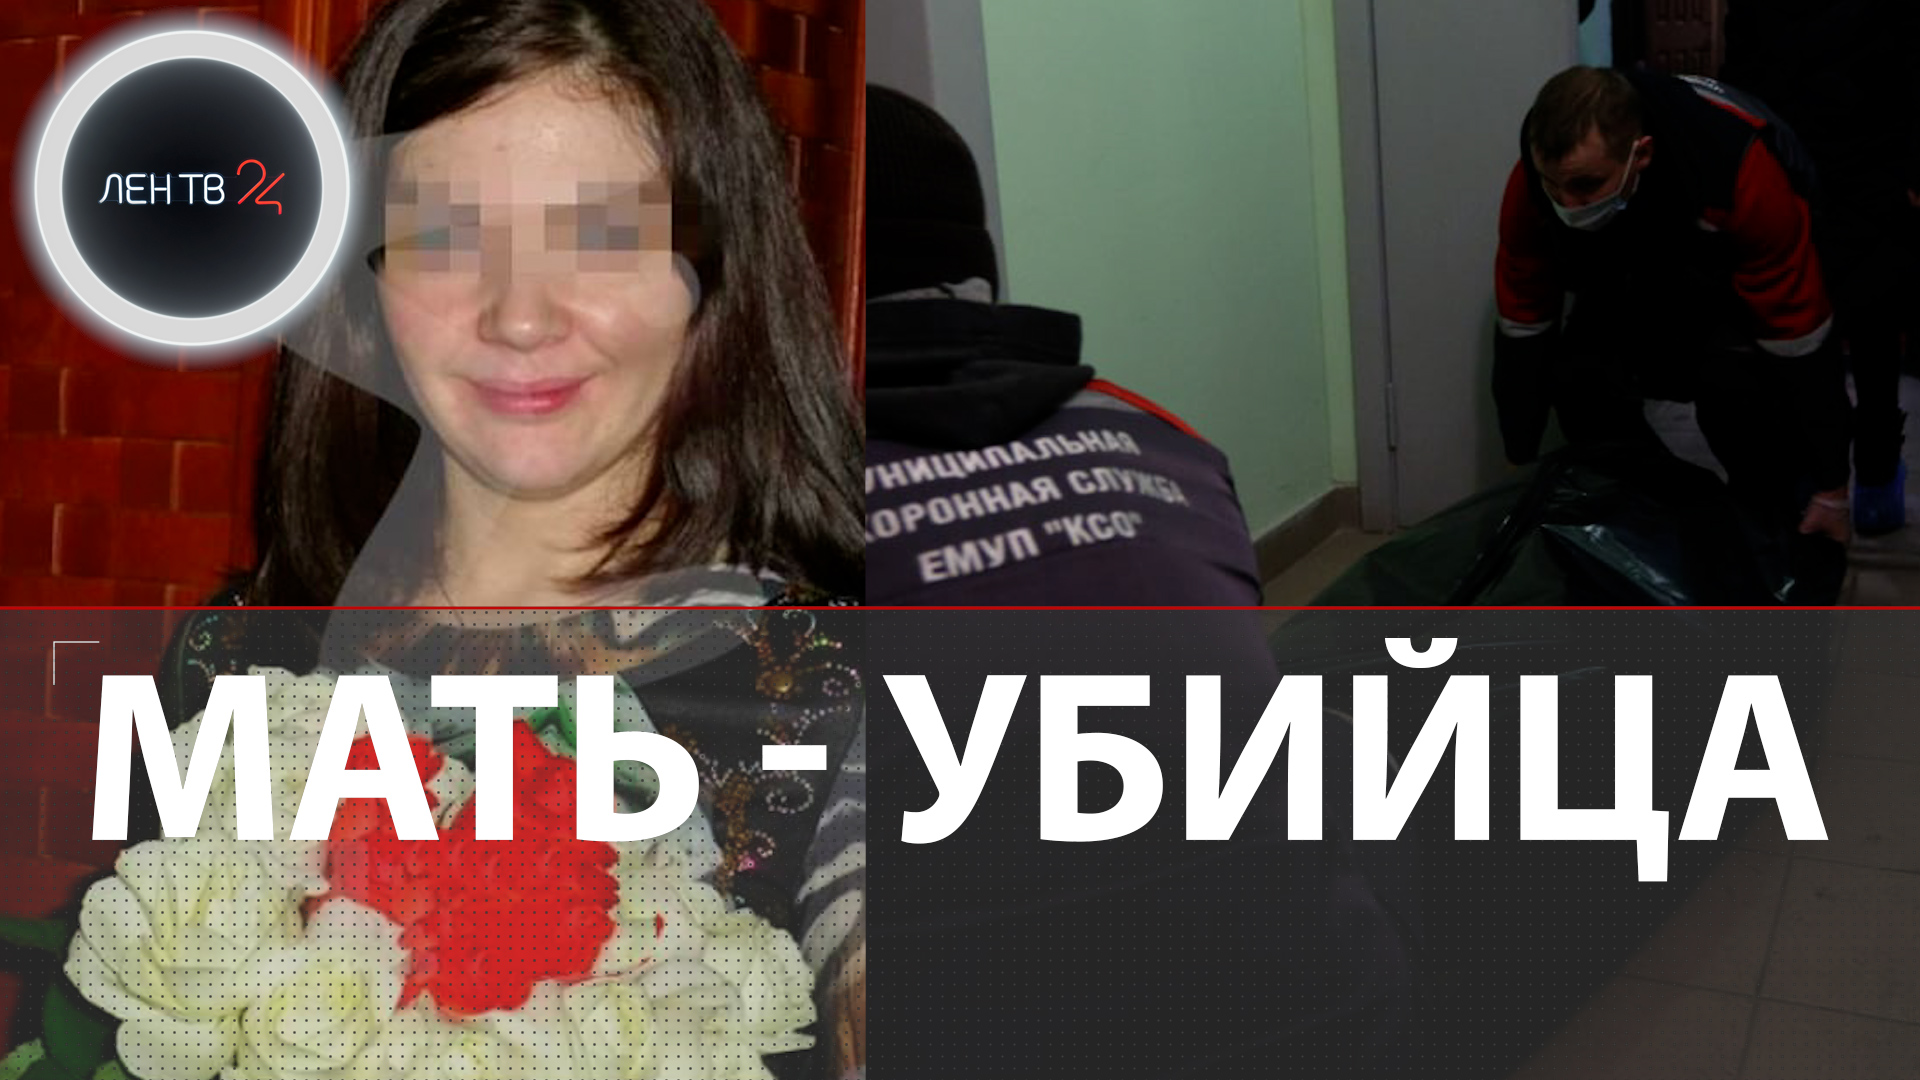 Мать душила. Убившая в Екатеринбурге троих своих детей.